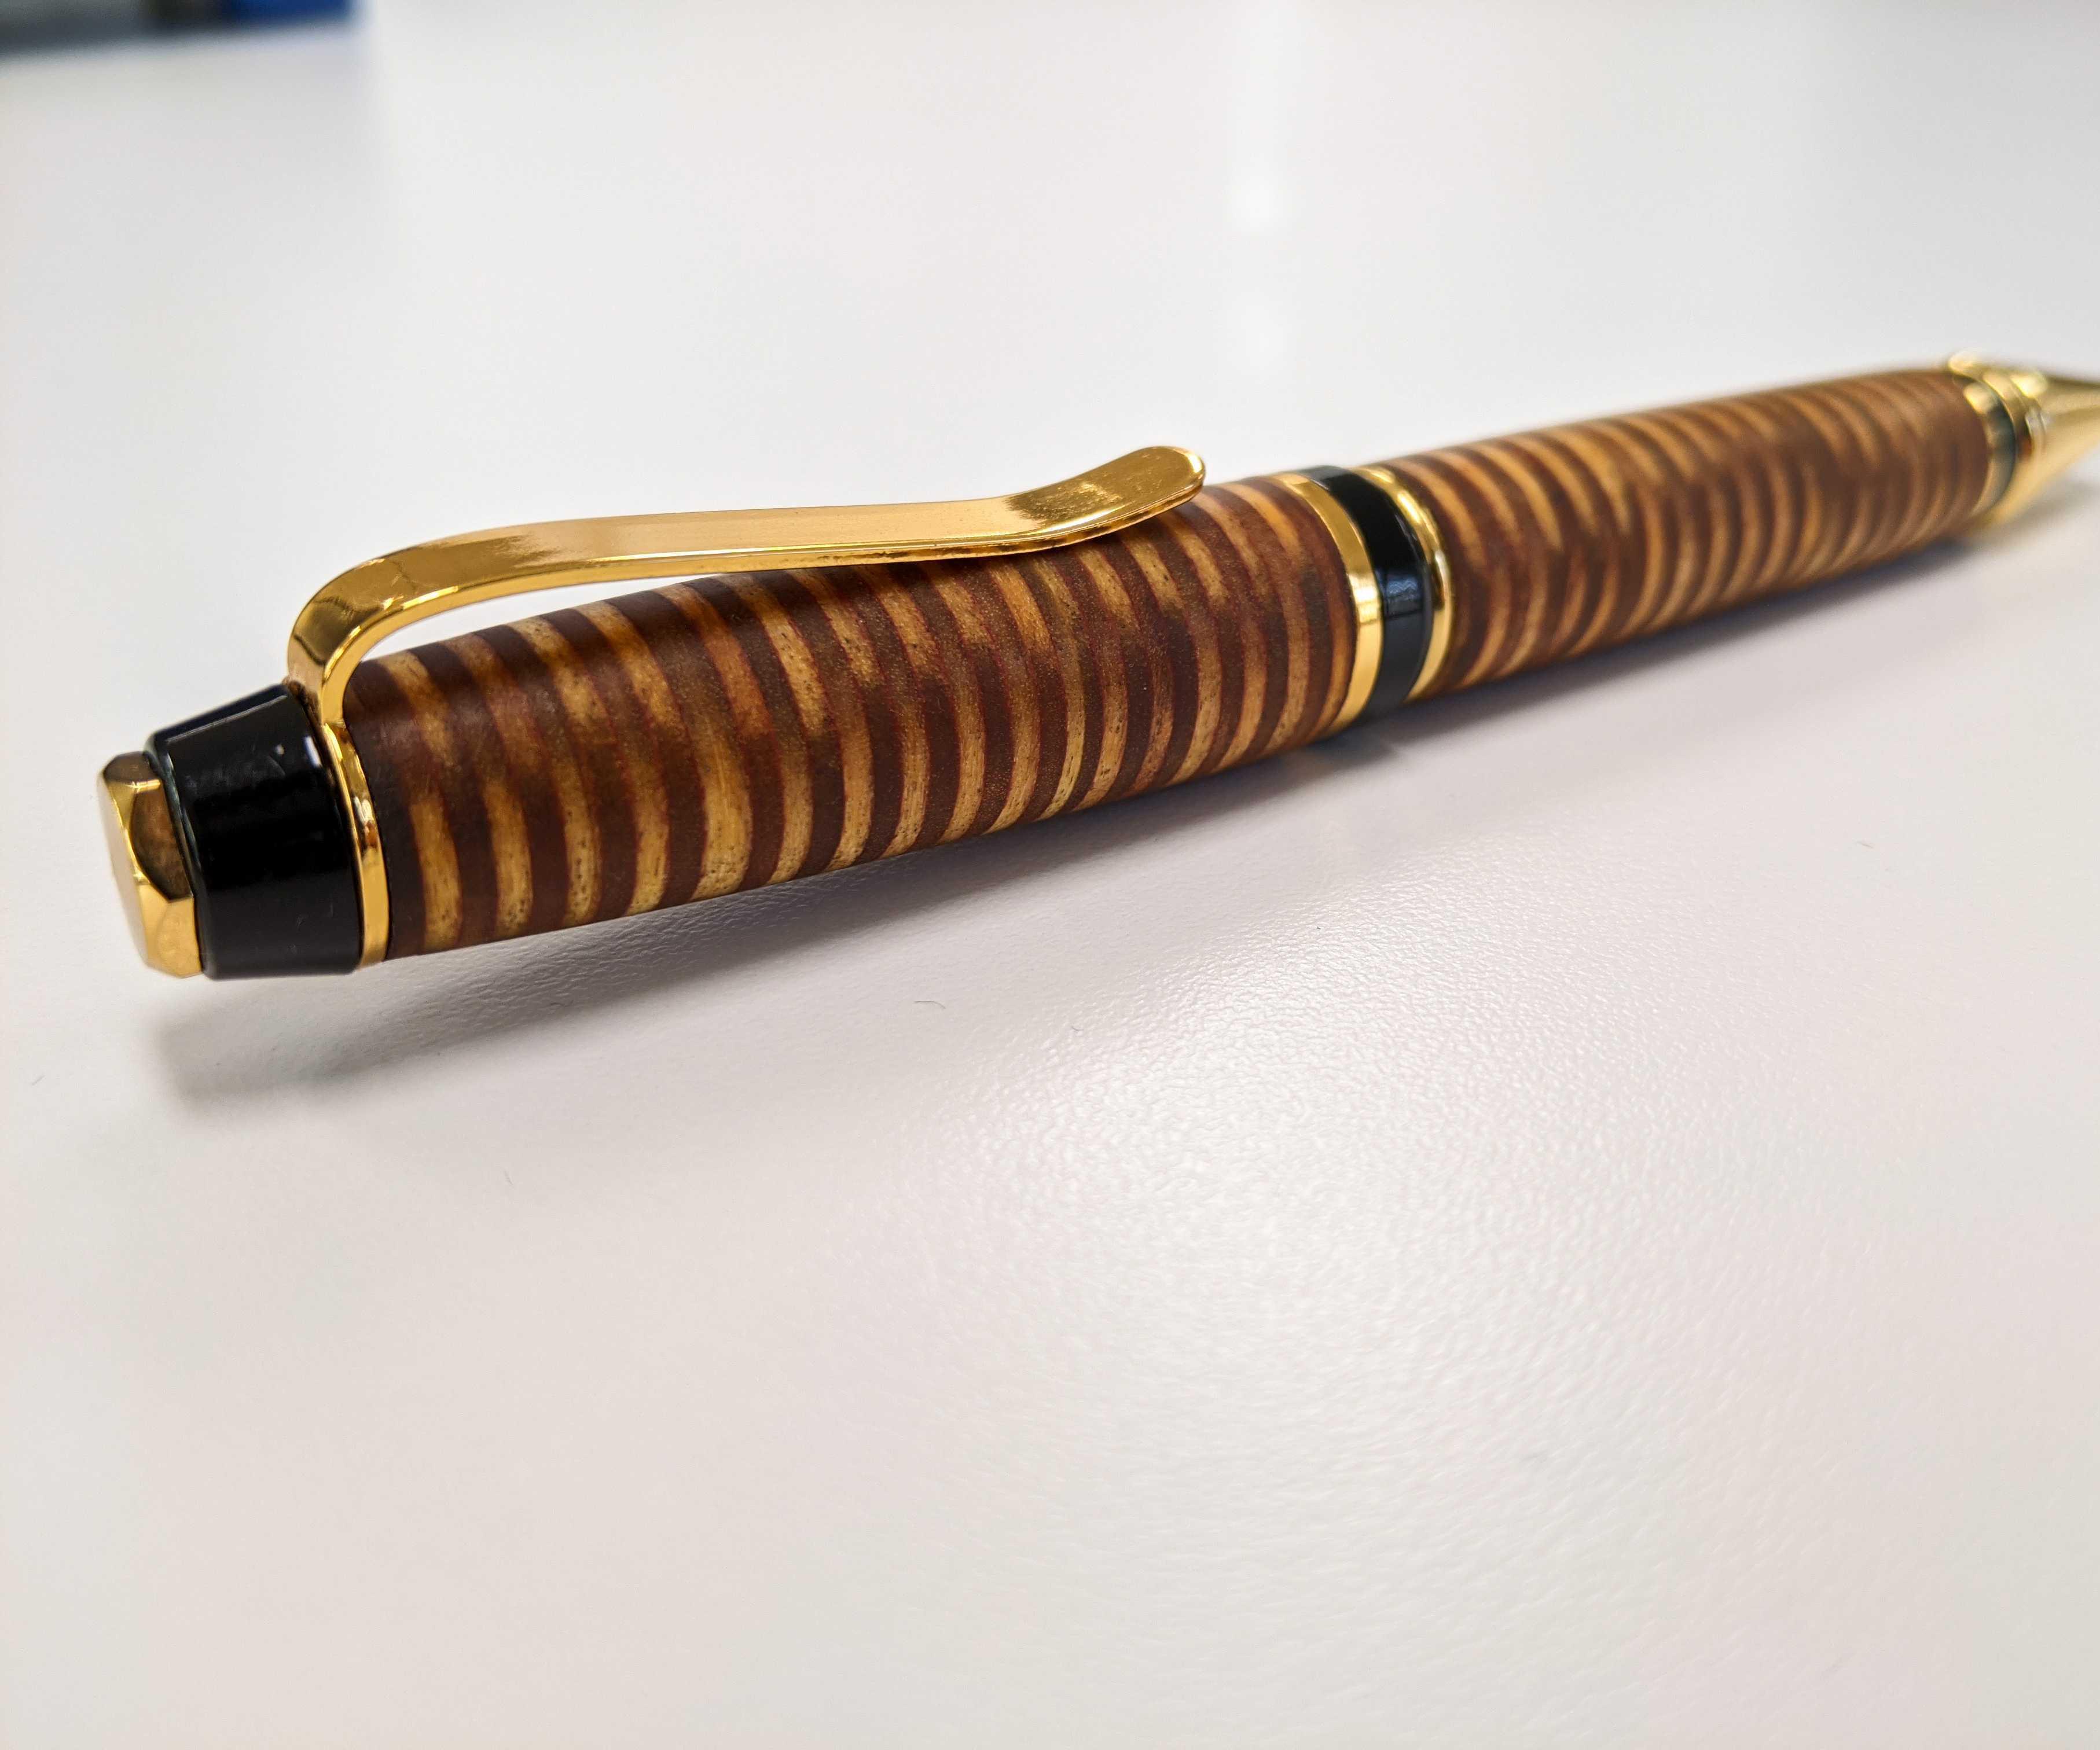  Tiger Tail Pen + New Bonus